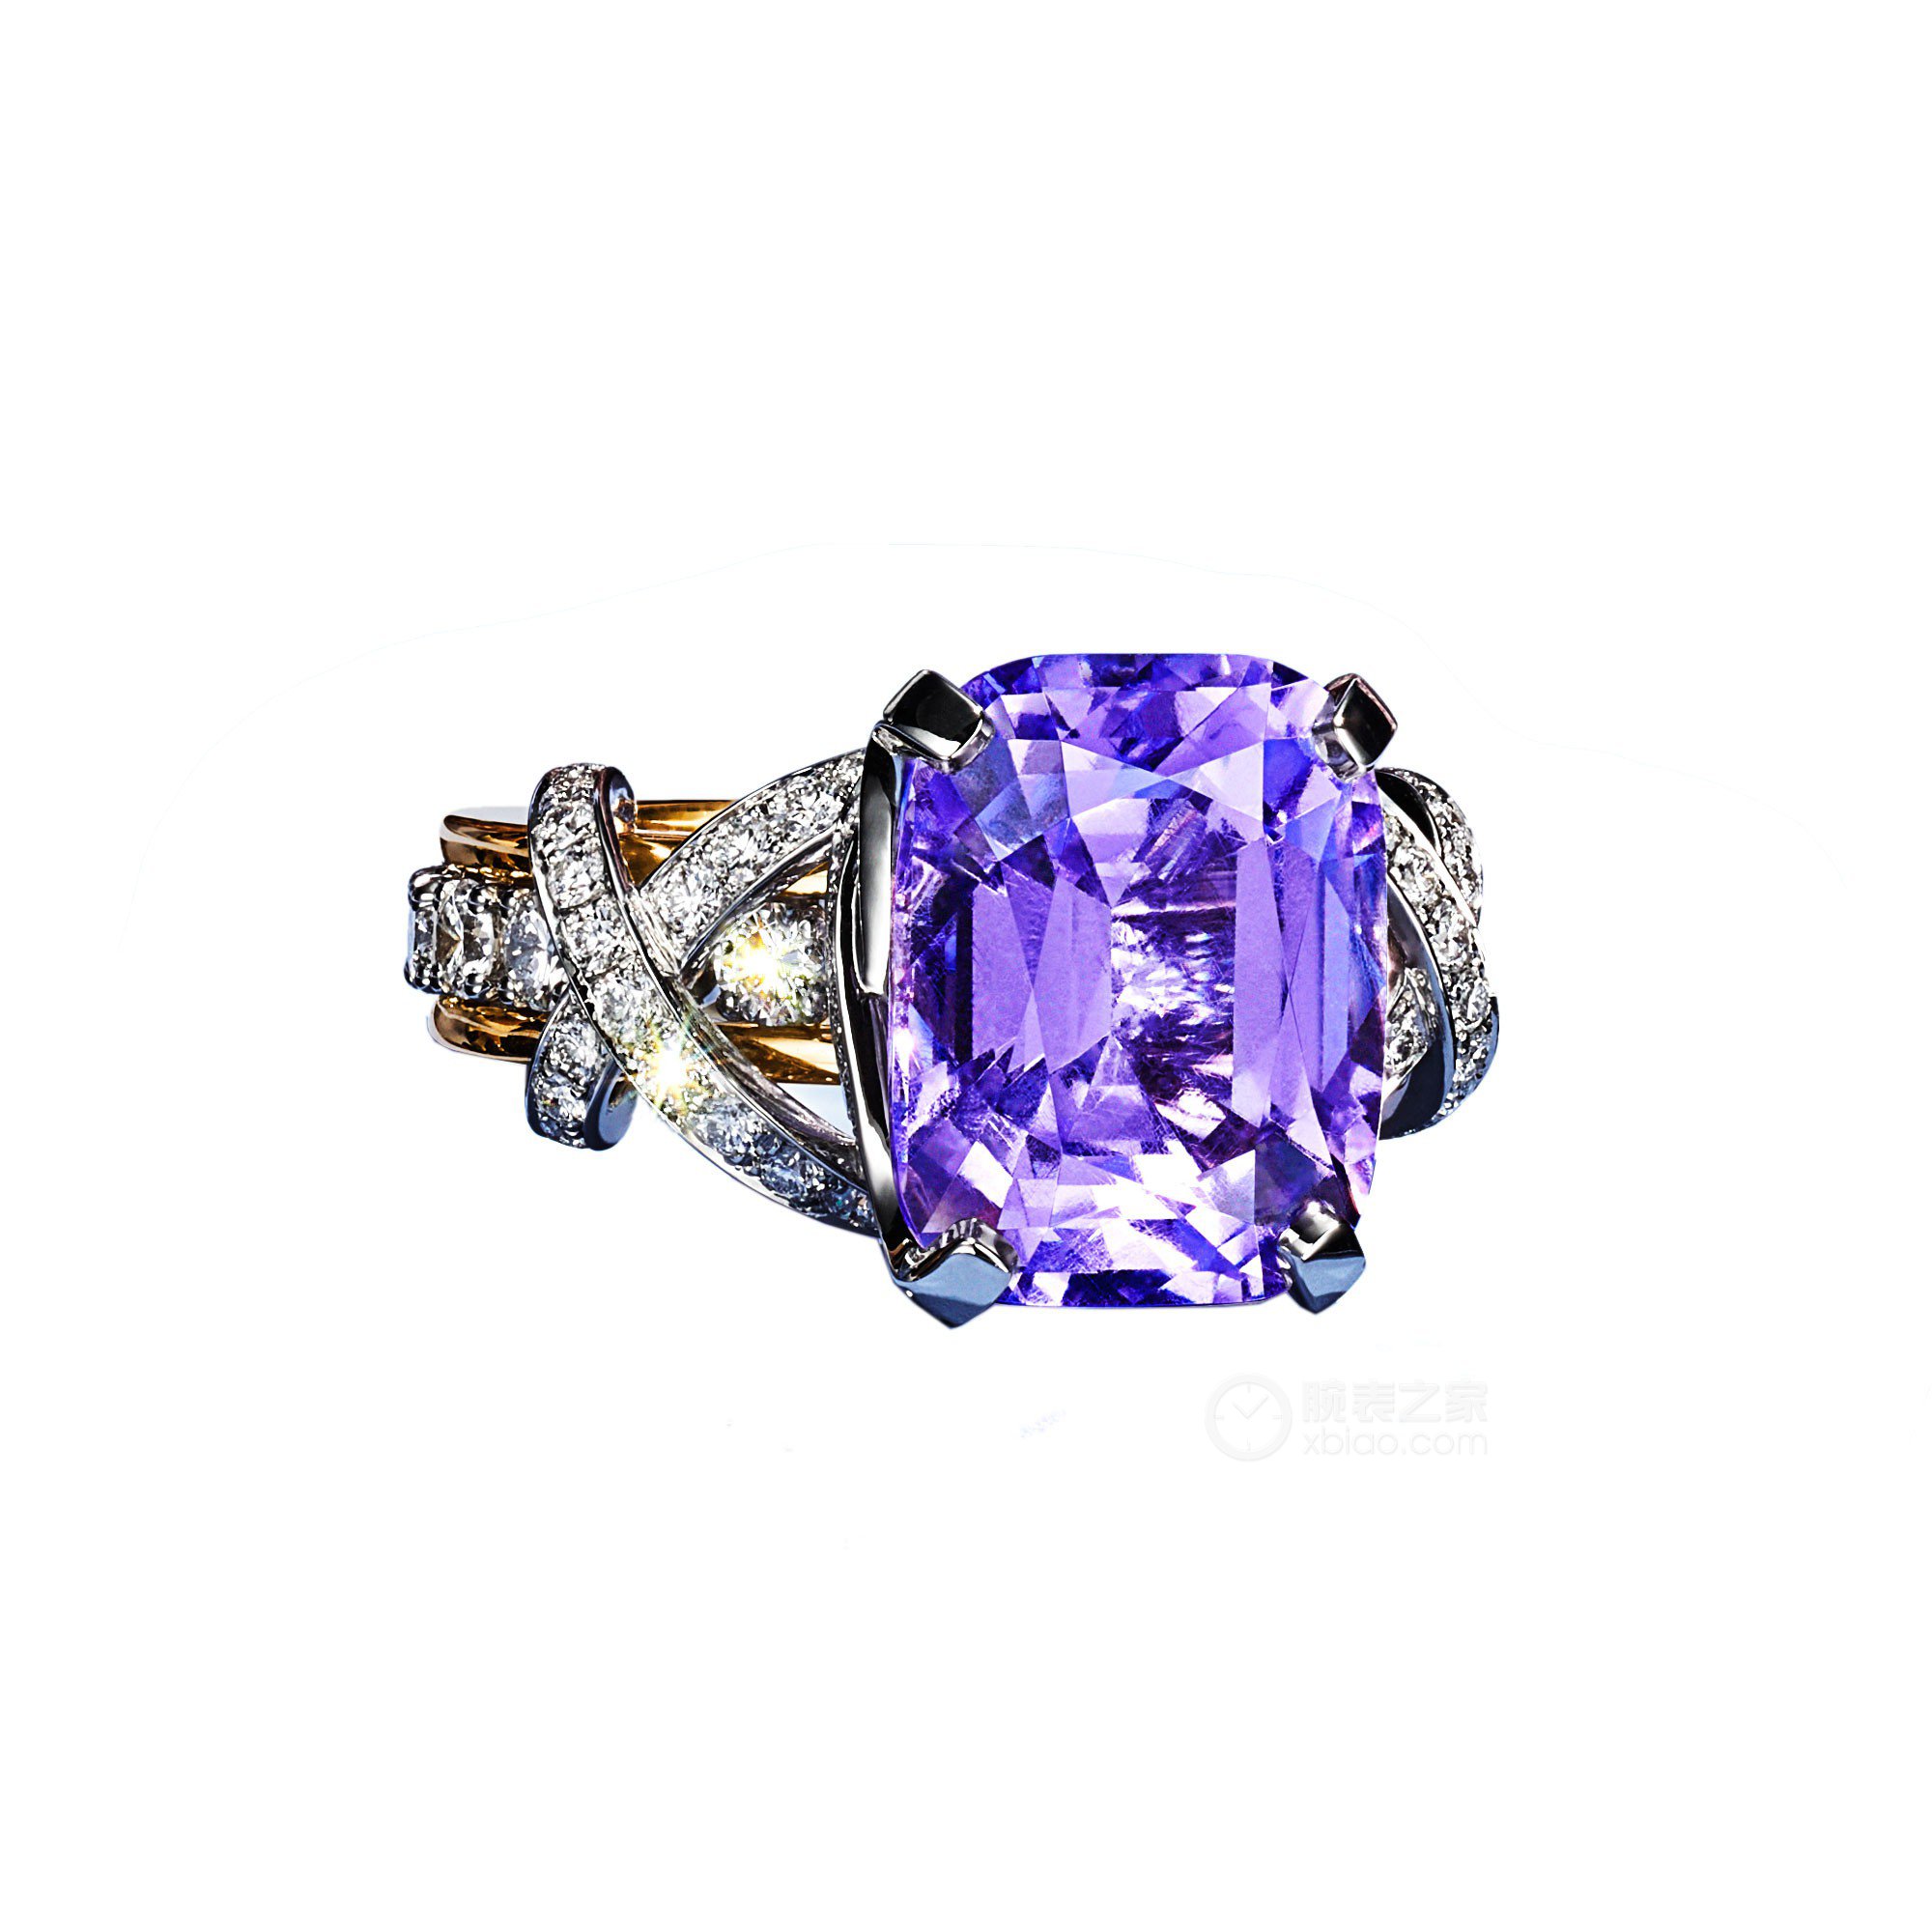 蒂芙尼BLUE BOOK高级珠宝铂金及18K黄金镶嵌紫色尖晶石及钻石缎带造型戒指戒指